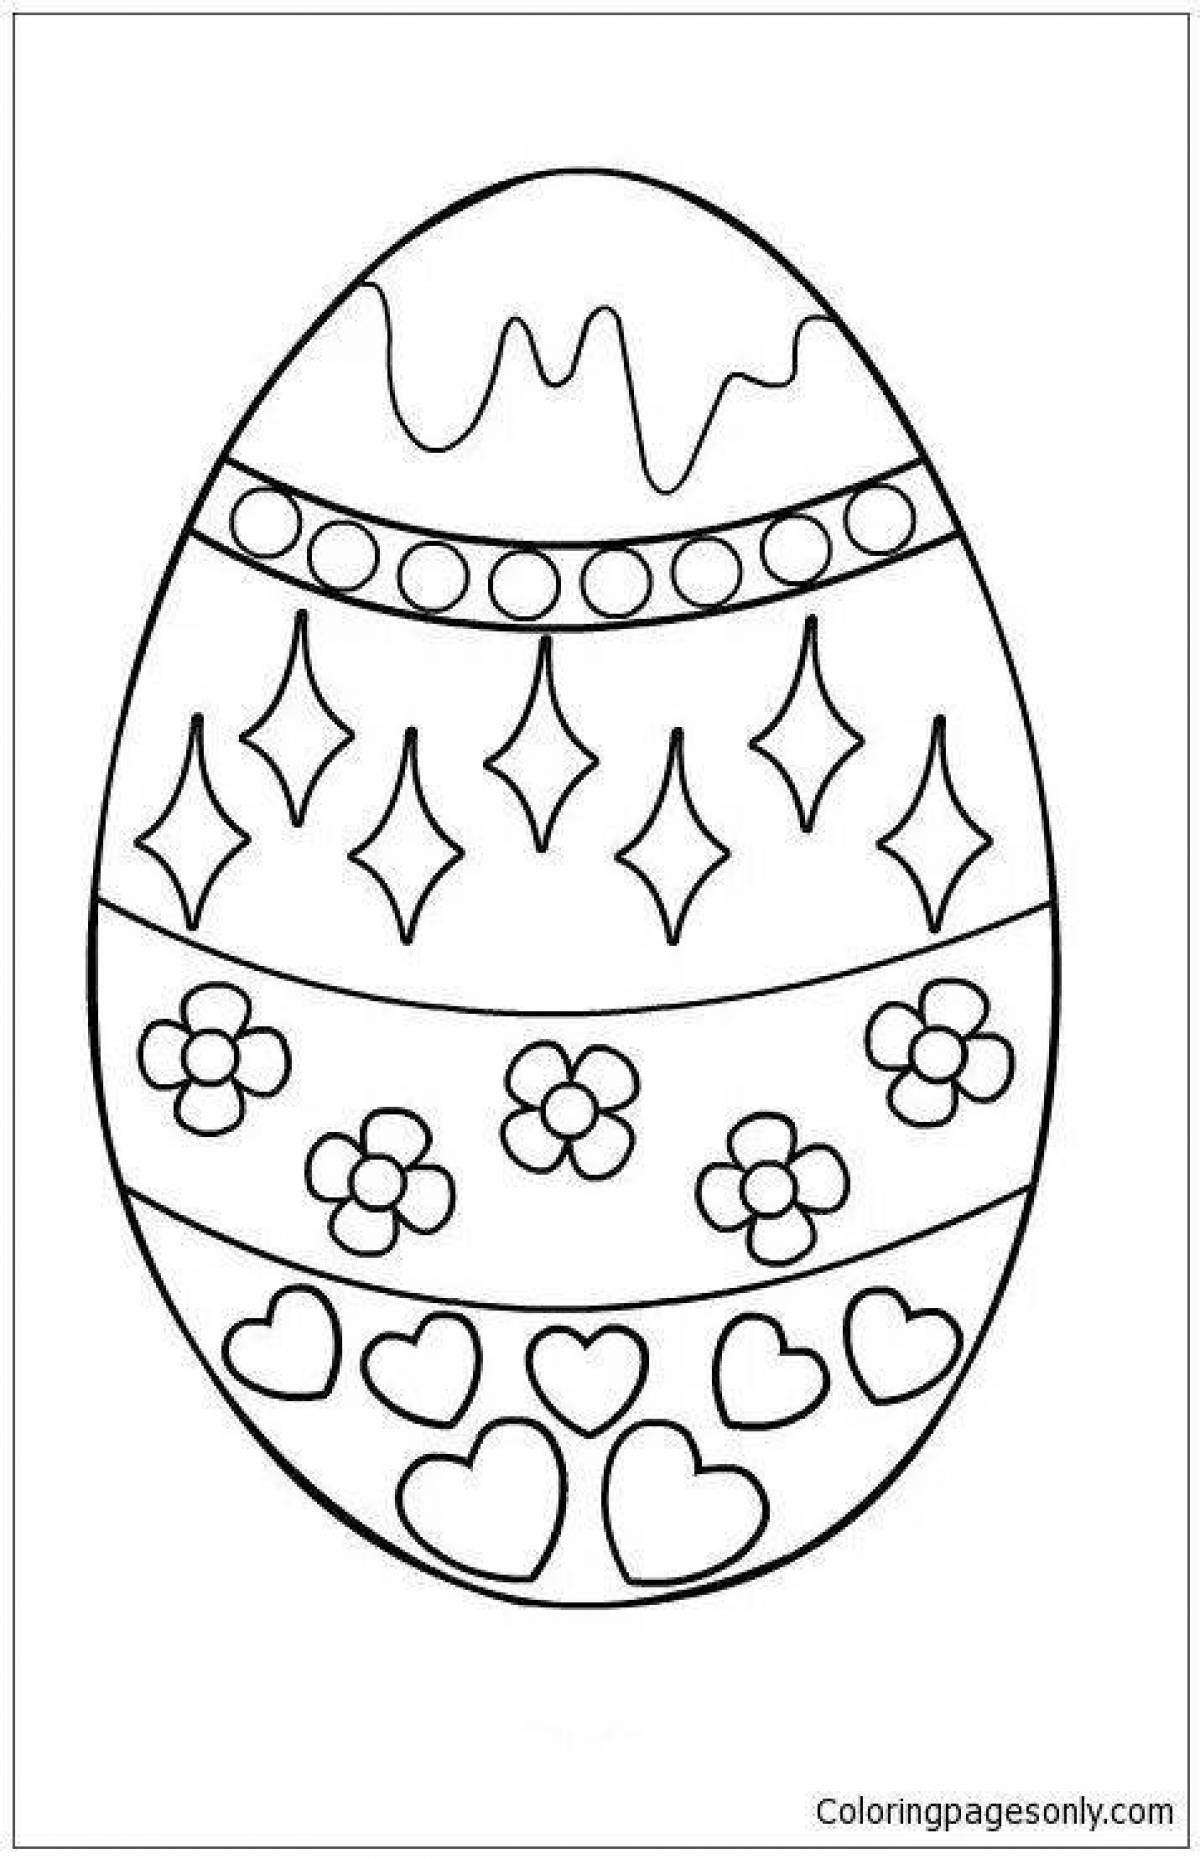 Причудливая раскраска пасхального яйца